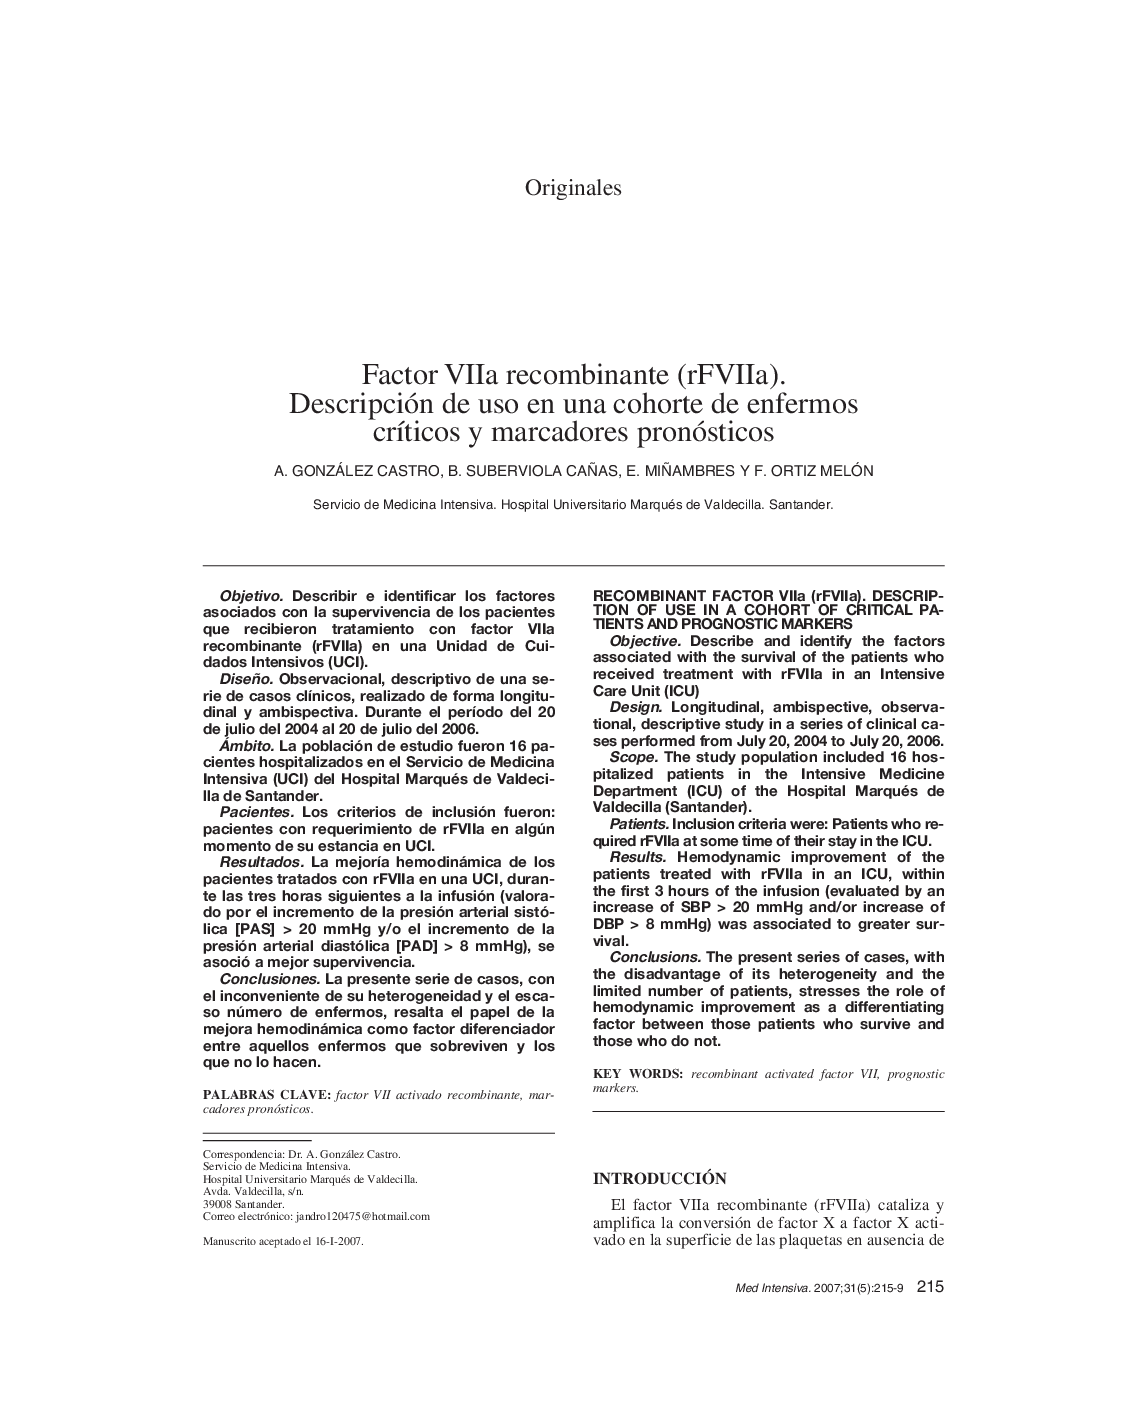 Factor VIIa recombinante (rFVIIa). Descripción de uso en una cohorte de enfermos crÃ­ticos y marcadores pronósticos